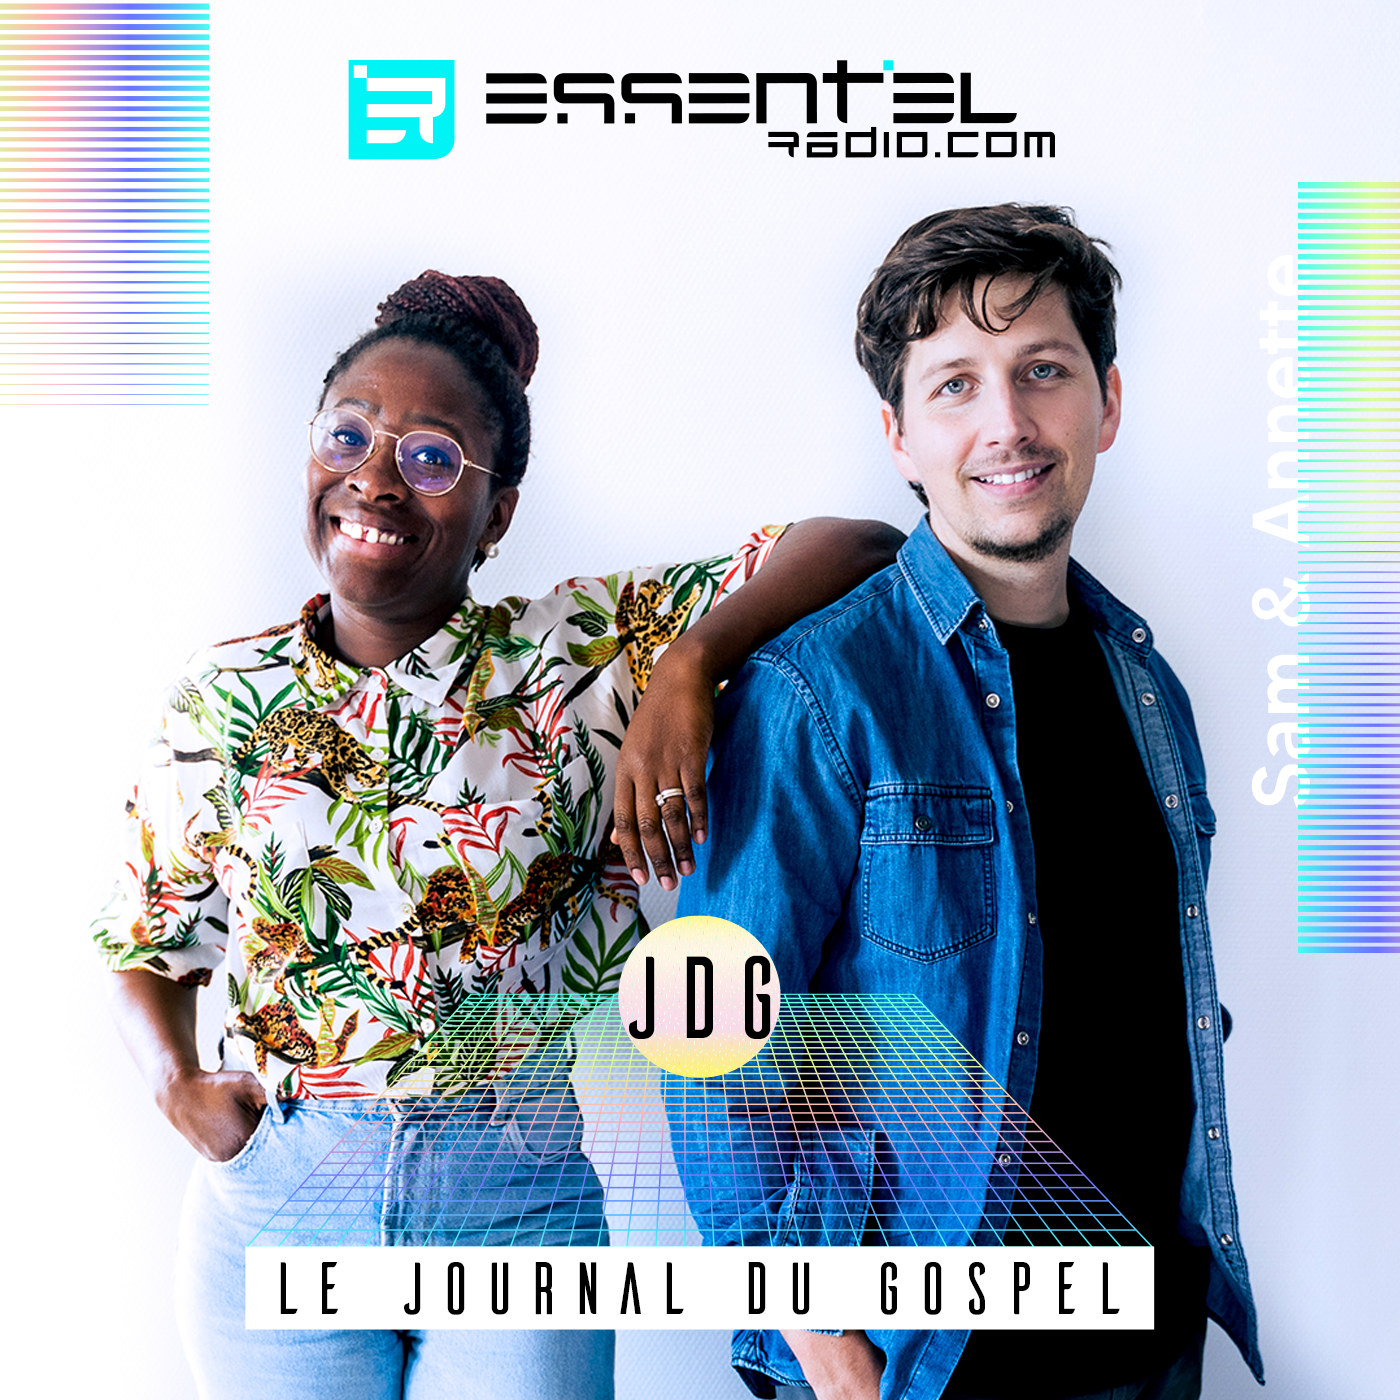 Artwork for podcast Le Journal du Gospel